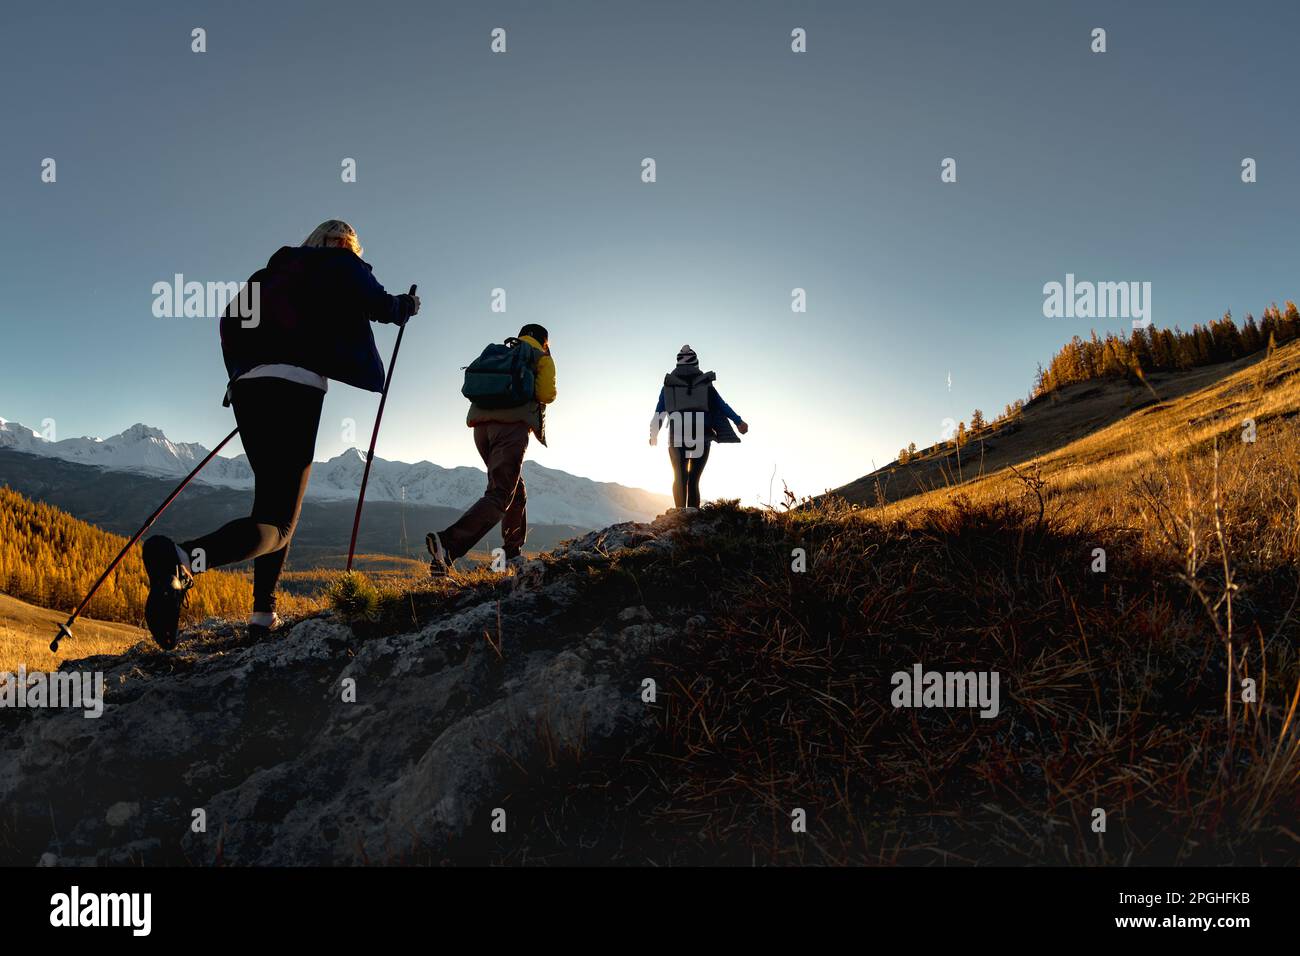 Drei aktive Wanderer wandern in den Bergen. Silhouetten von Touristen mit Rucksäcken bei Sonnenuntergang Stockfoto